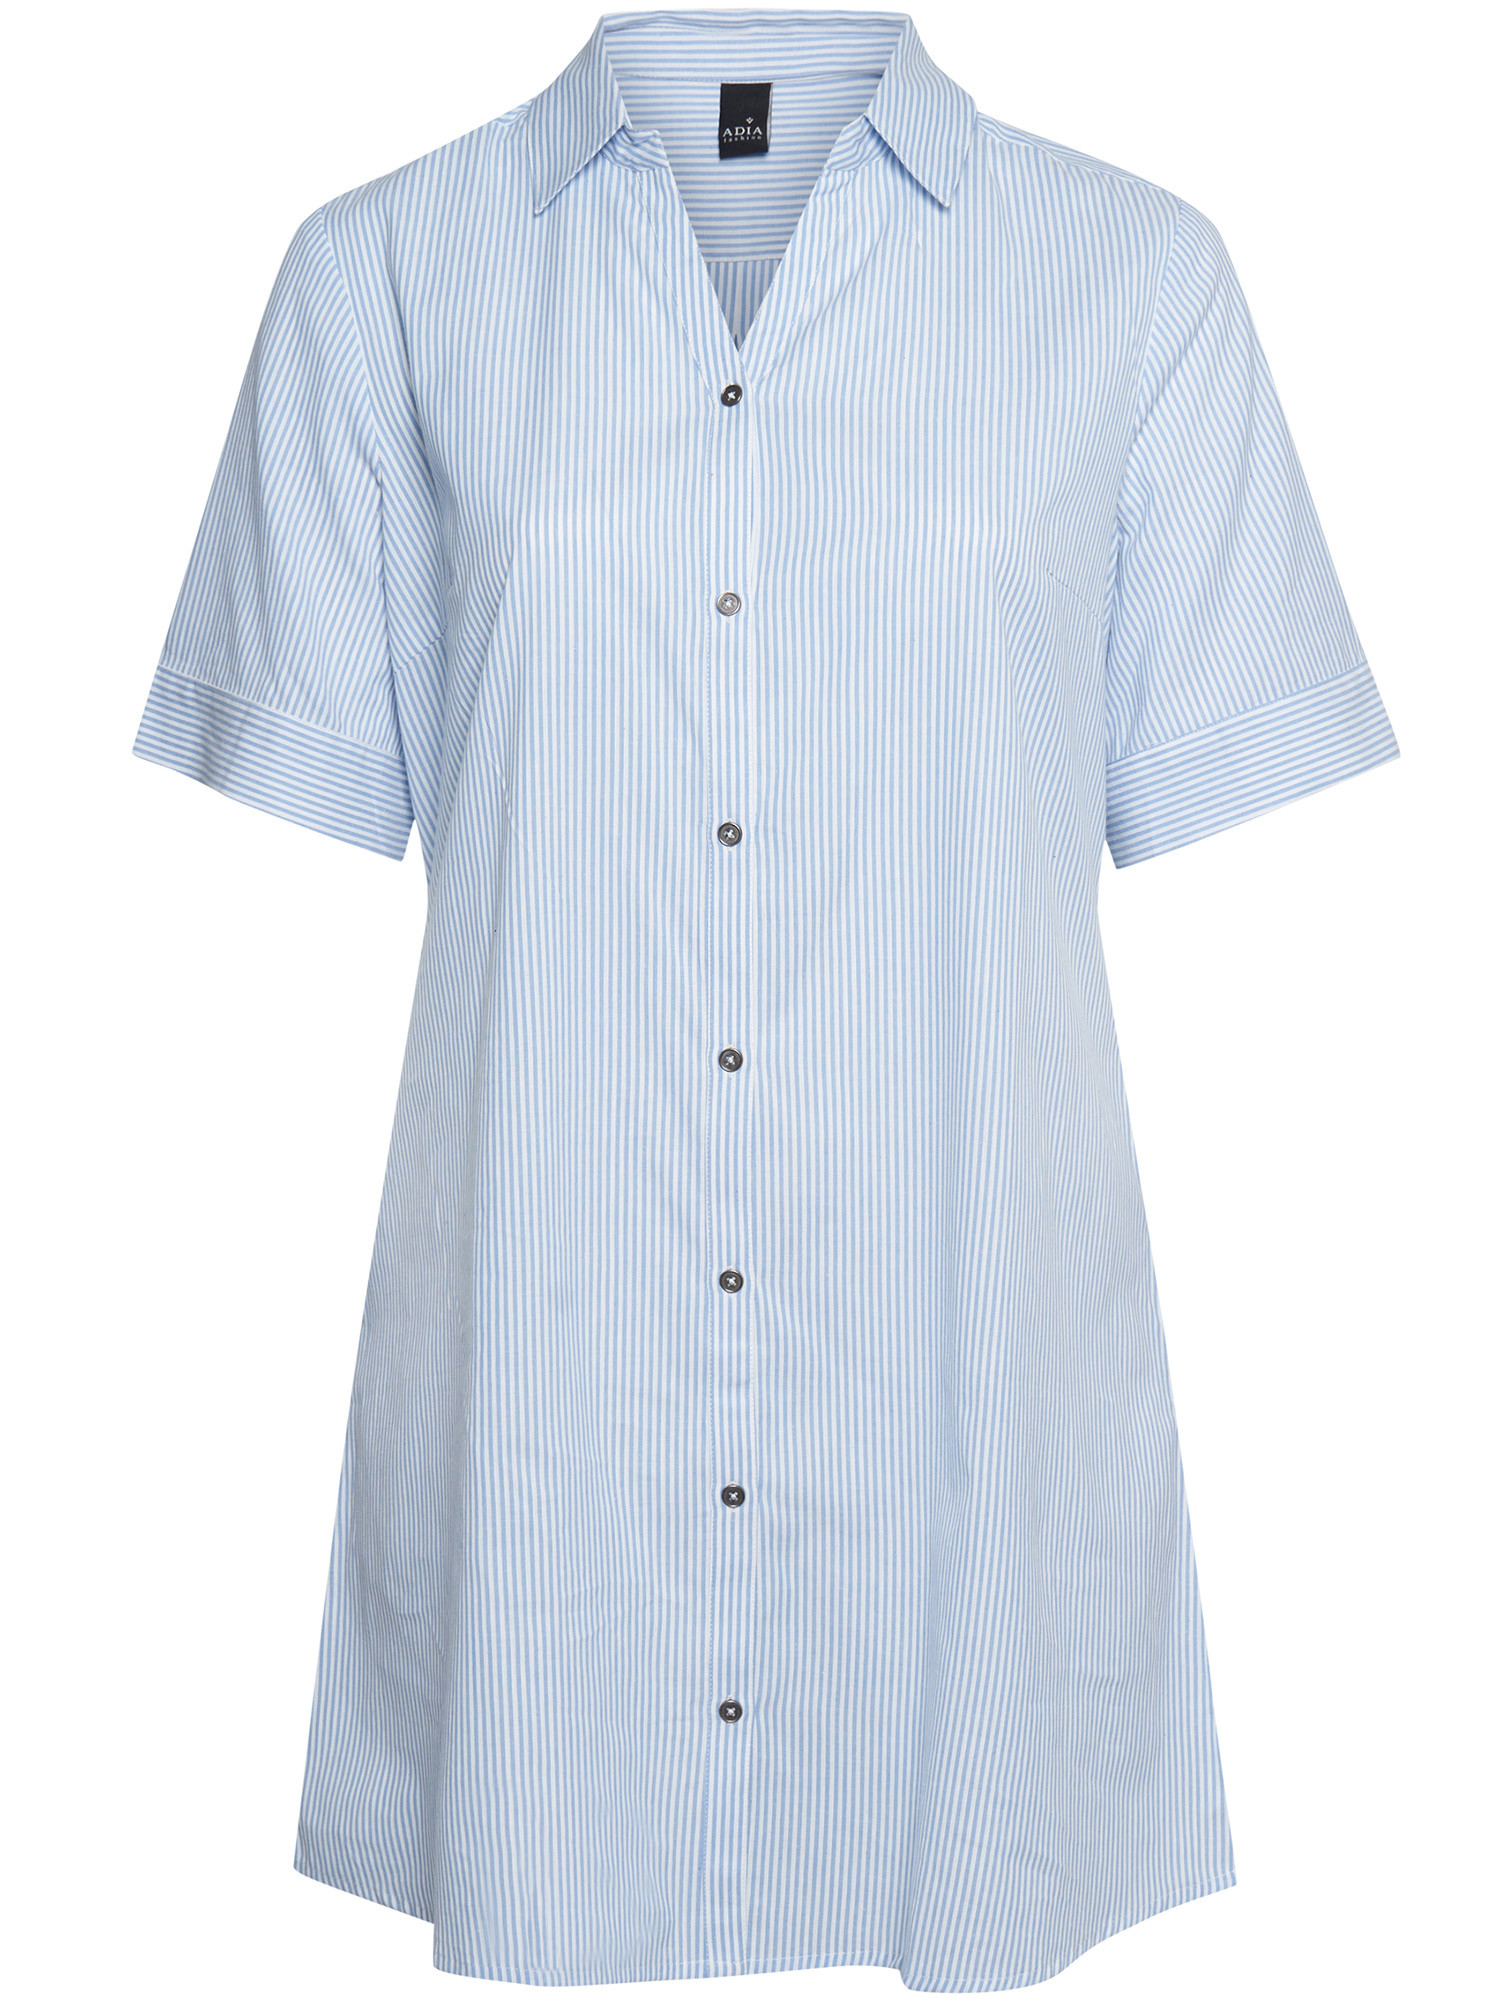 Bomullsskjorta med blå/vita ränder